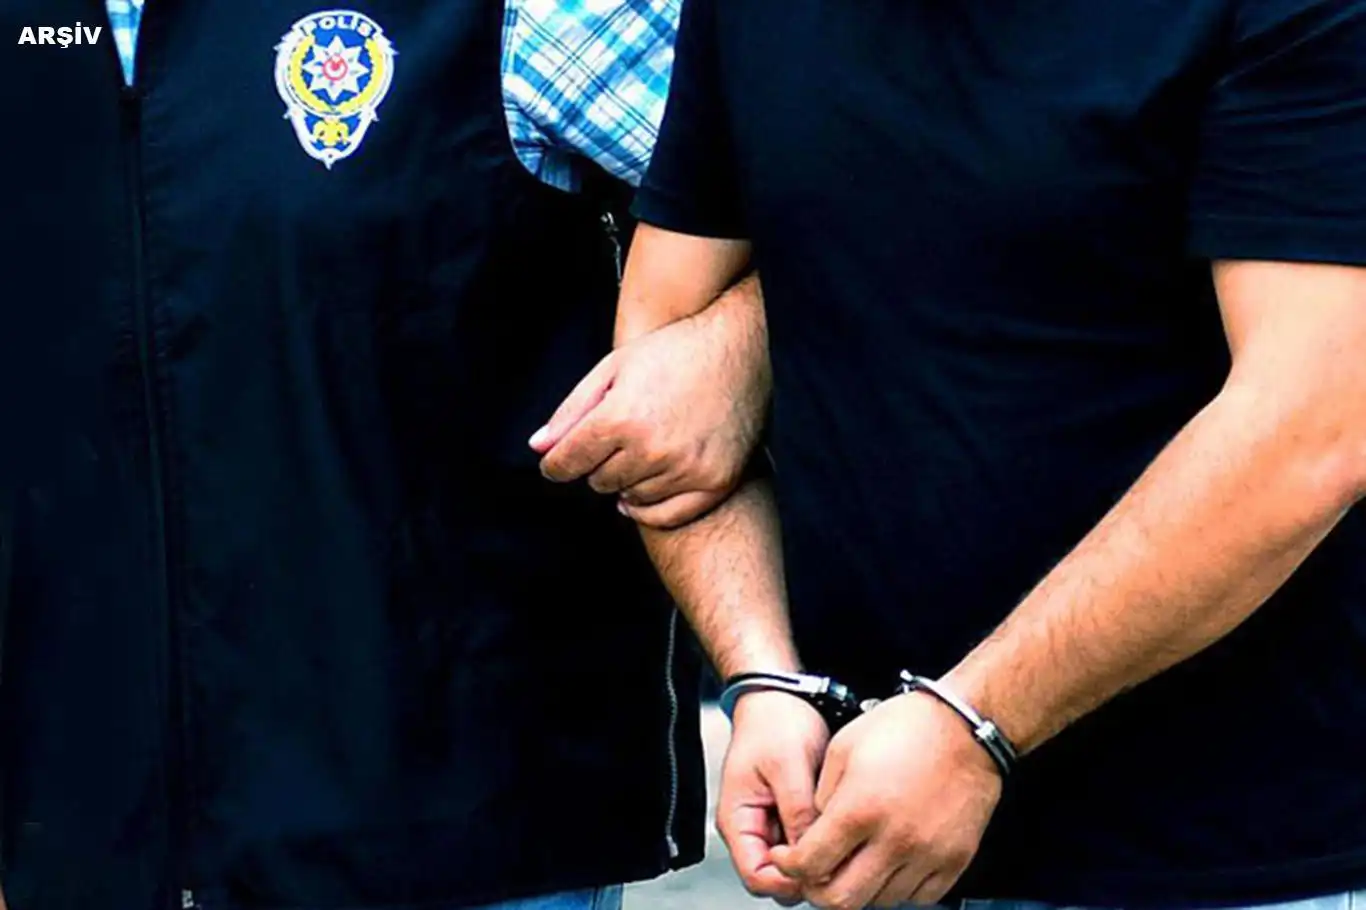 İstanbul'da suç örgütüne operasyon: 9 gözaltı